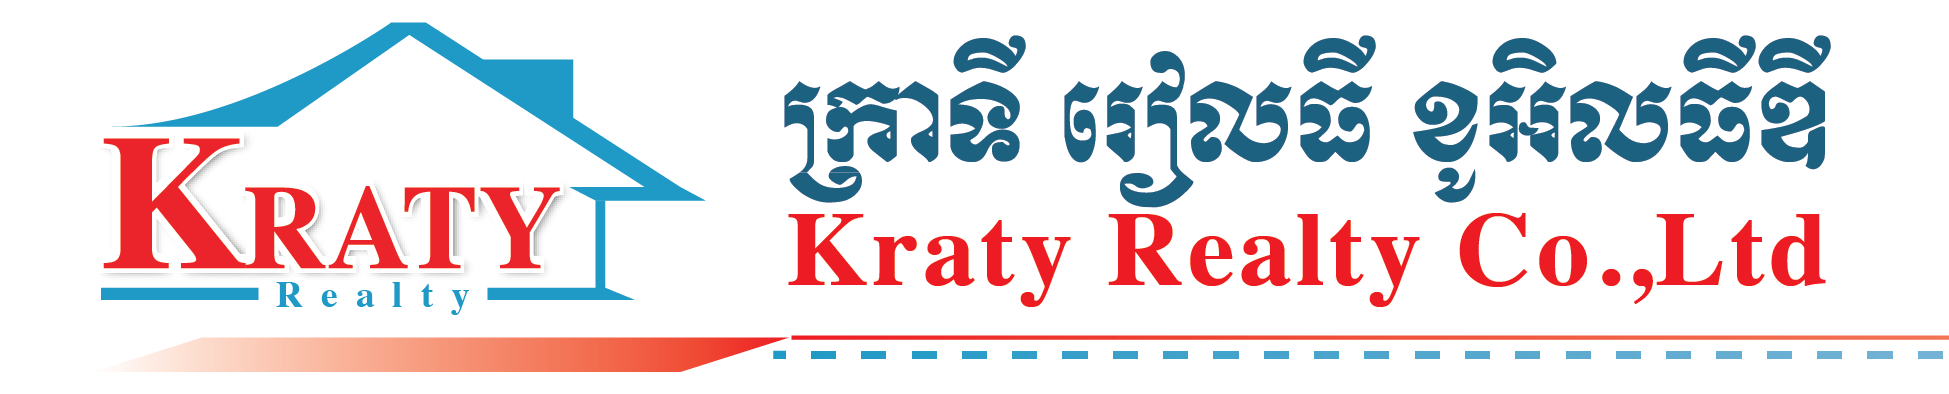 Kraty Realty Co.,Ltd